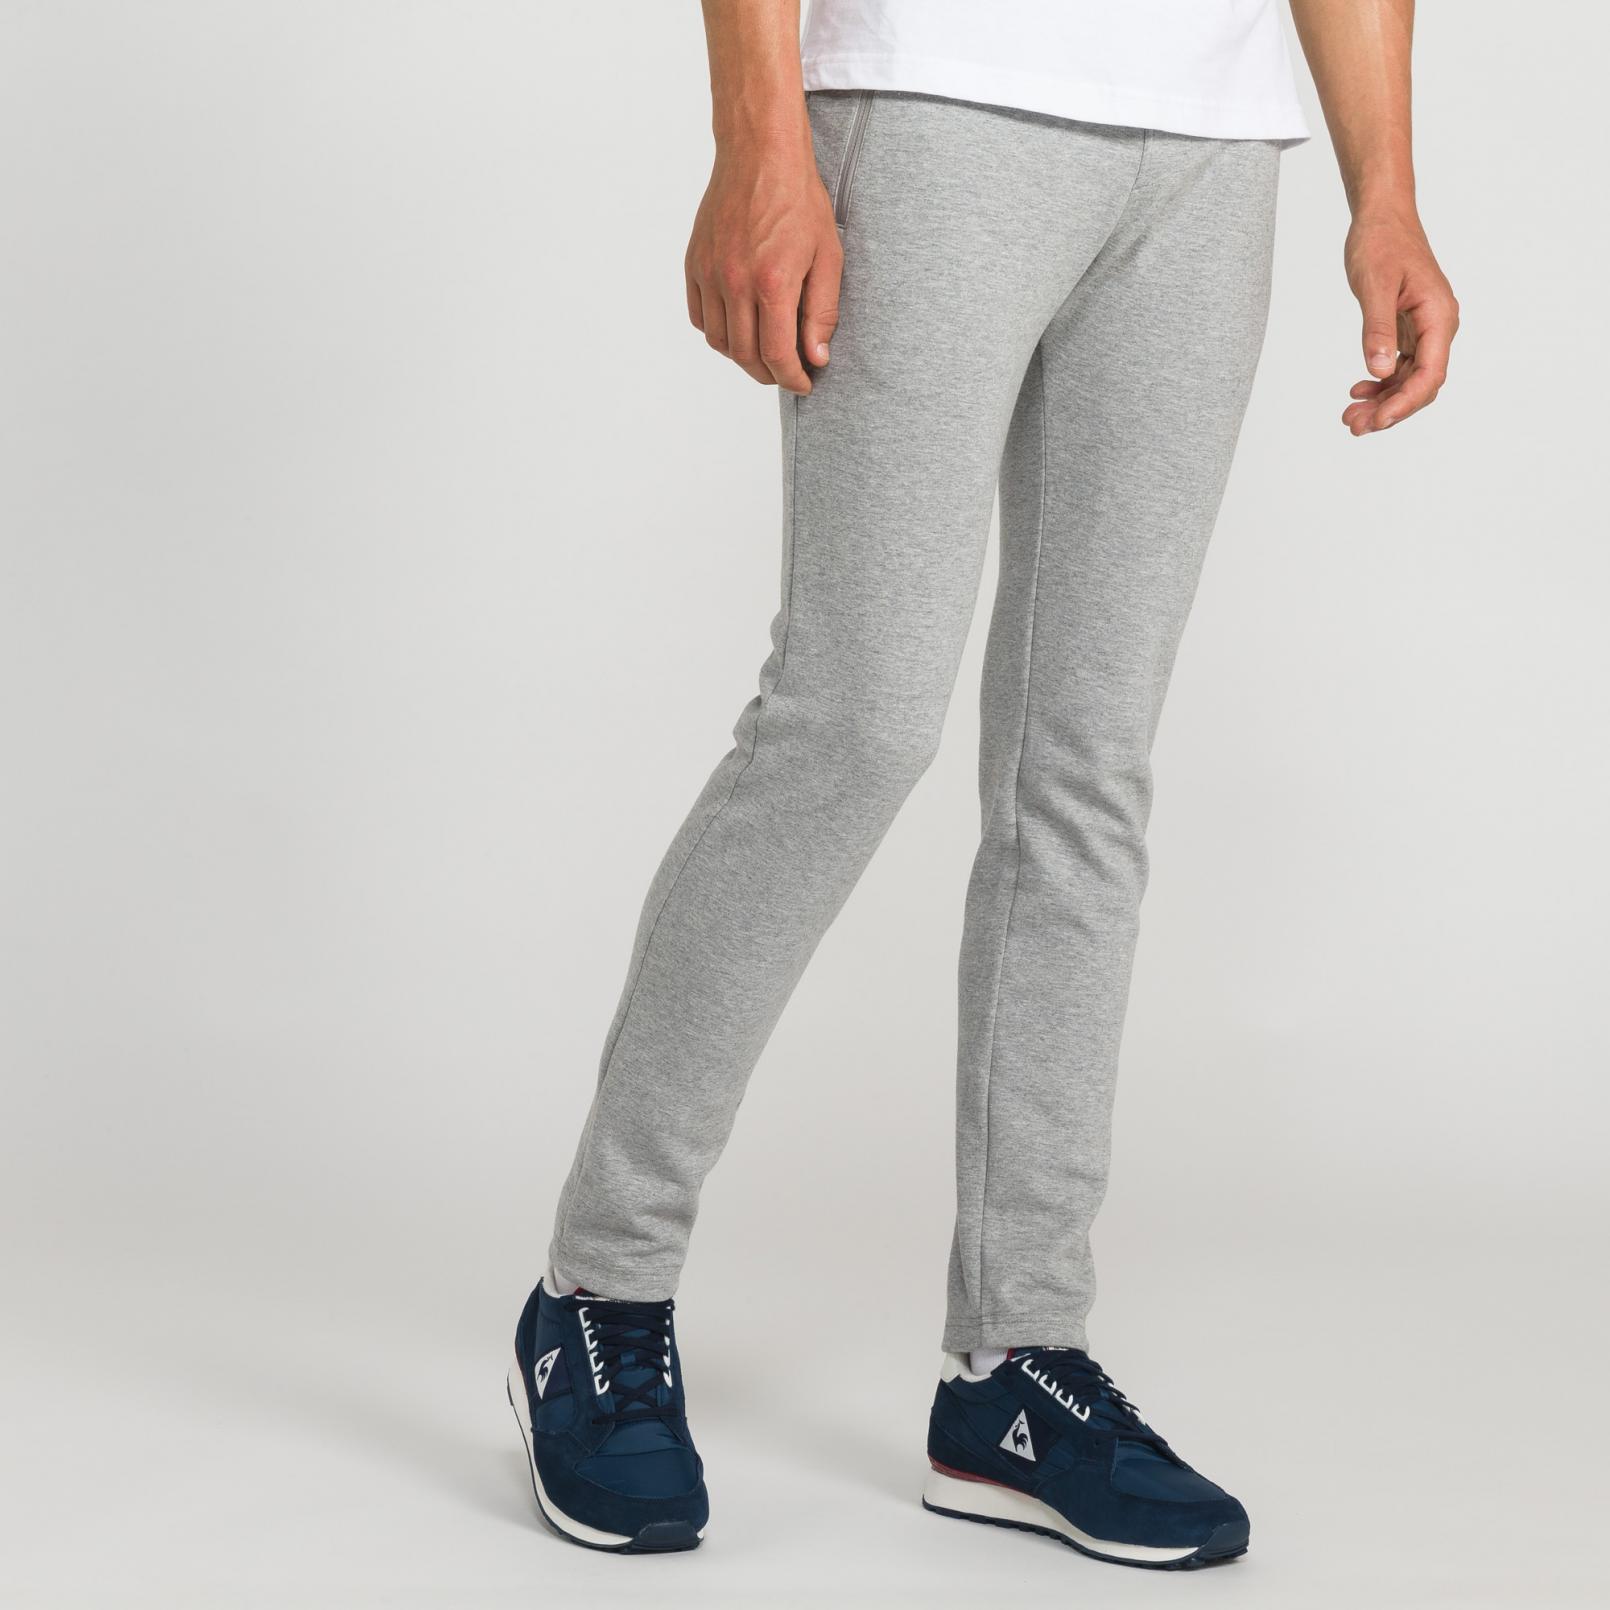 Pants – Le Coq Sportif Essentiels Pant Grey